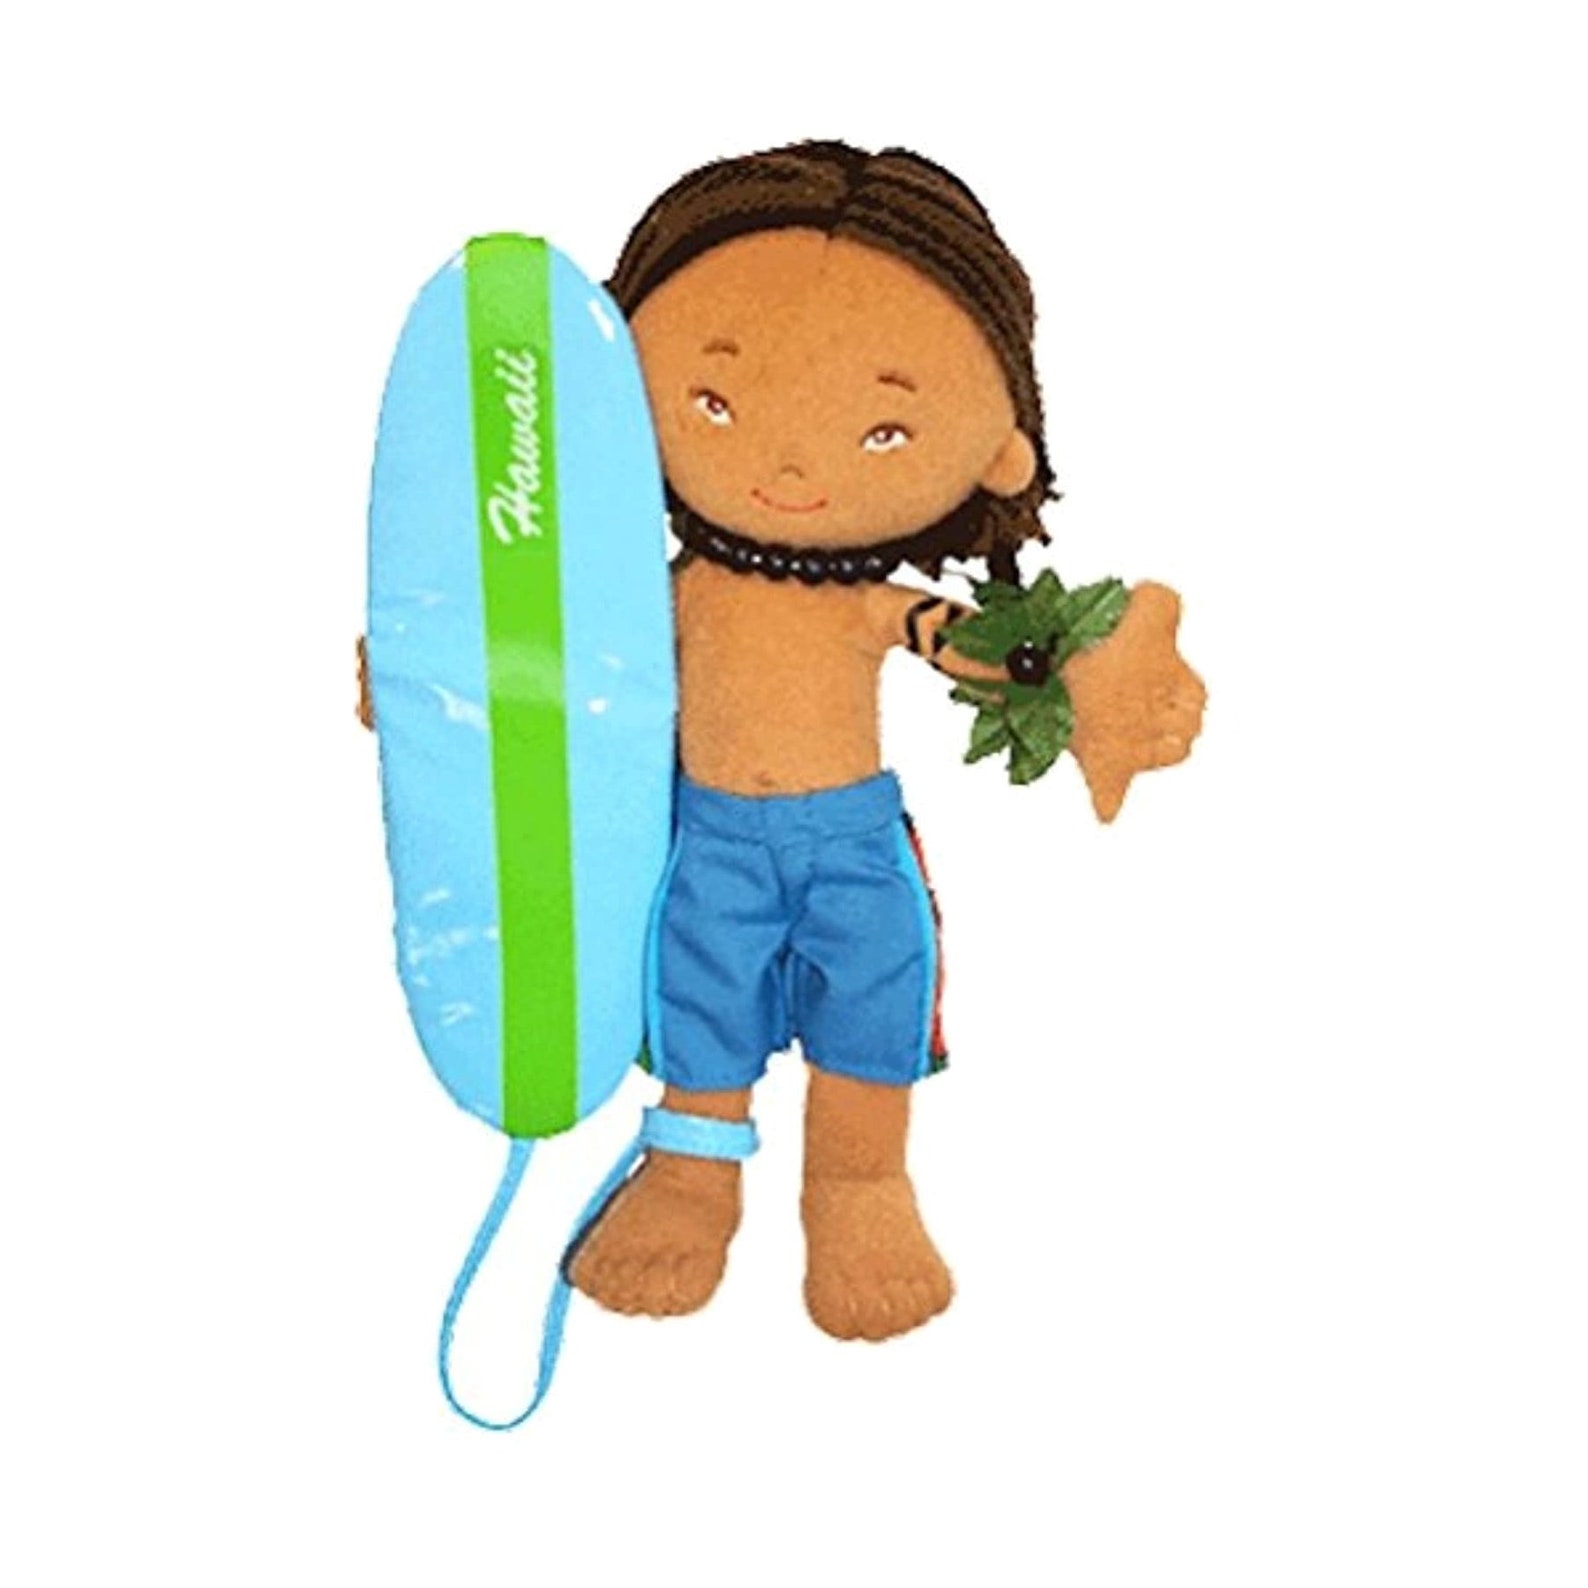 Hawaiian toys and Hawaiian gifts for kids by top Hawaii blogger Hawaii Travel with Kids: Hawaii souvenir doll